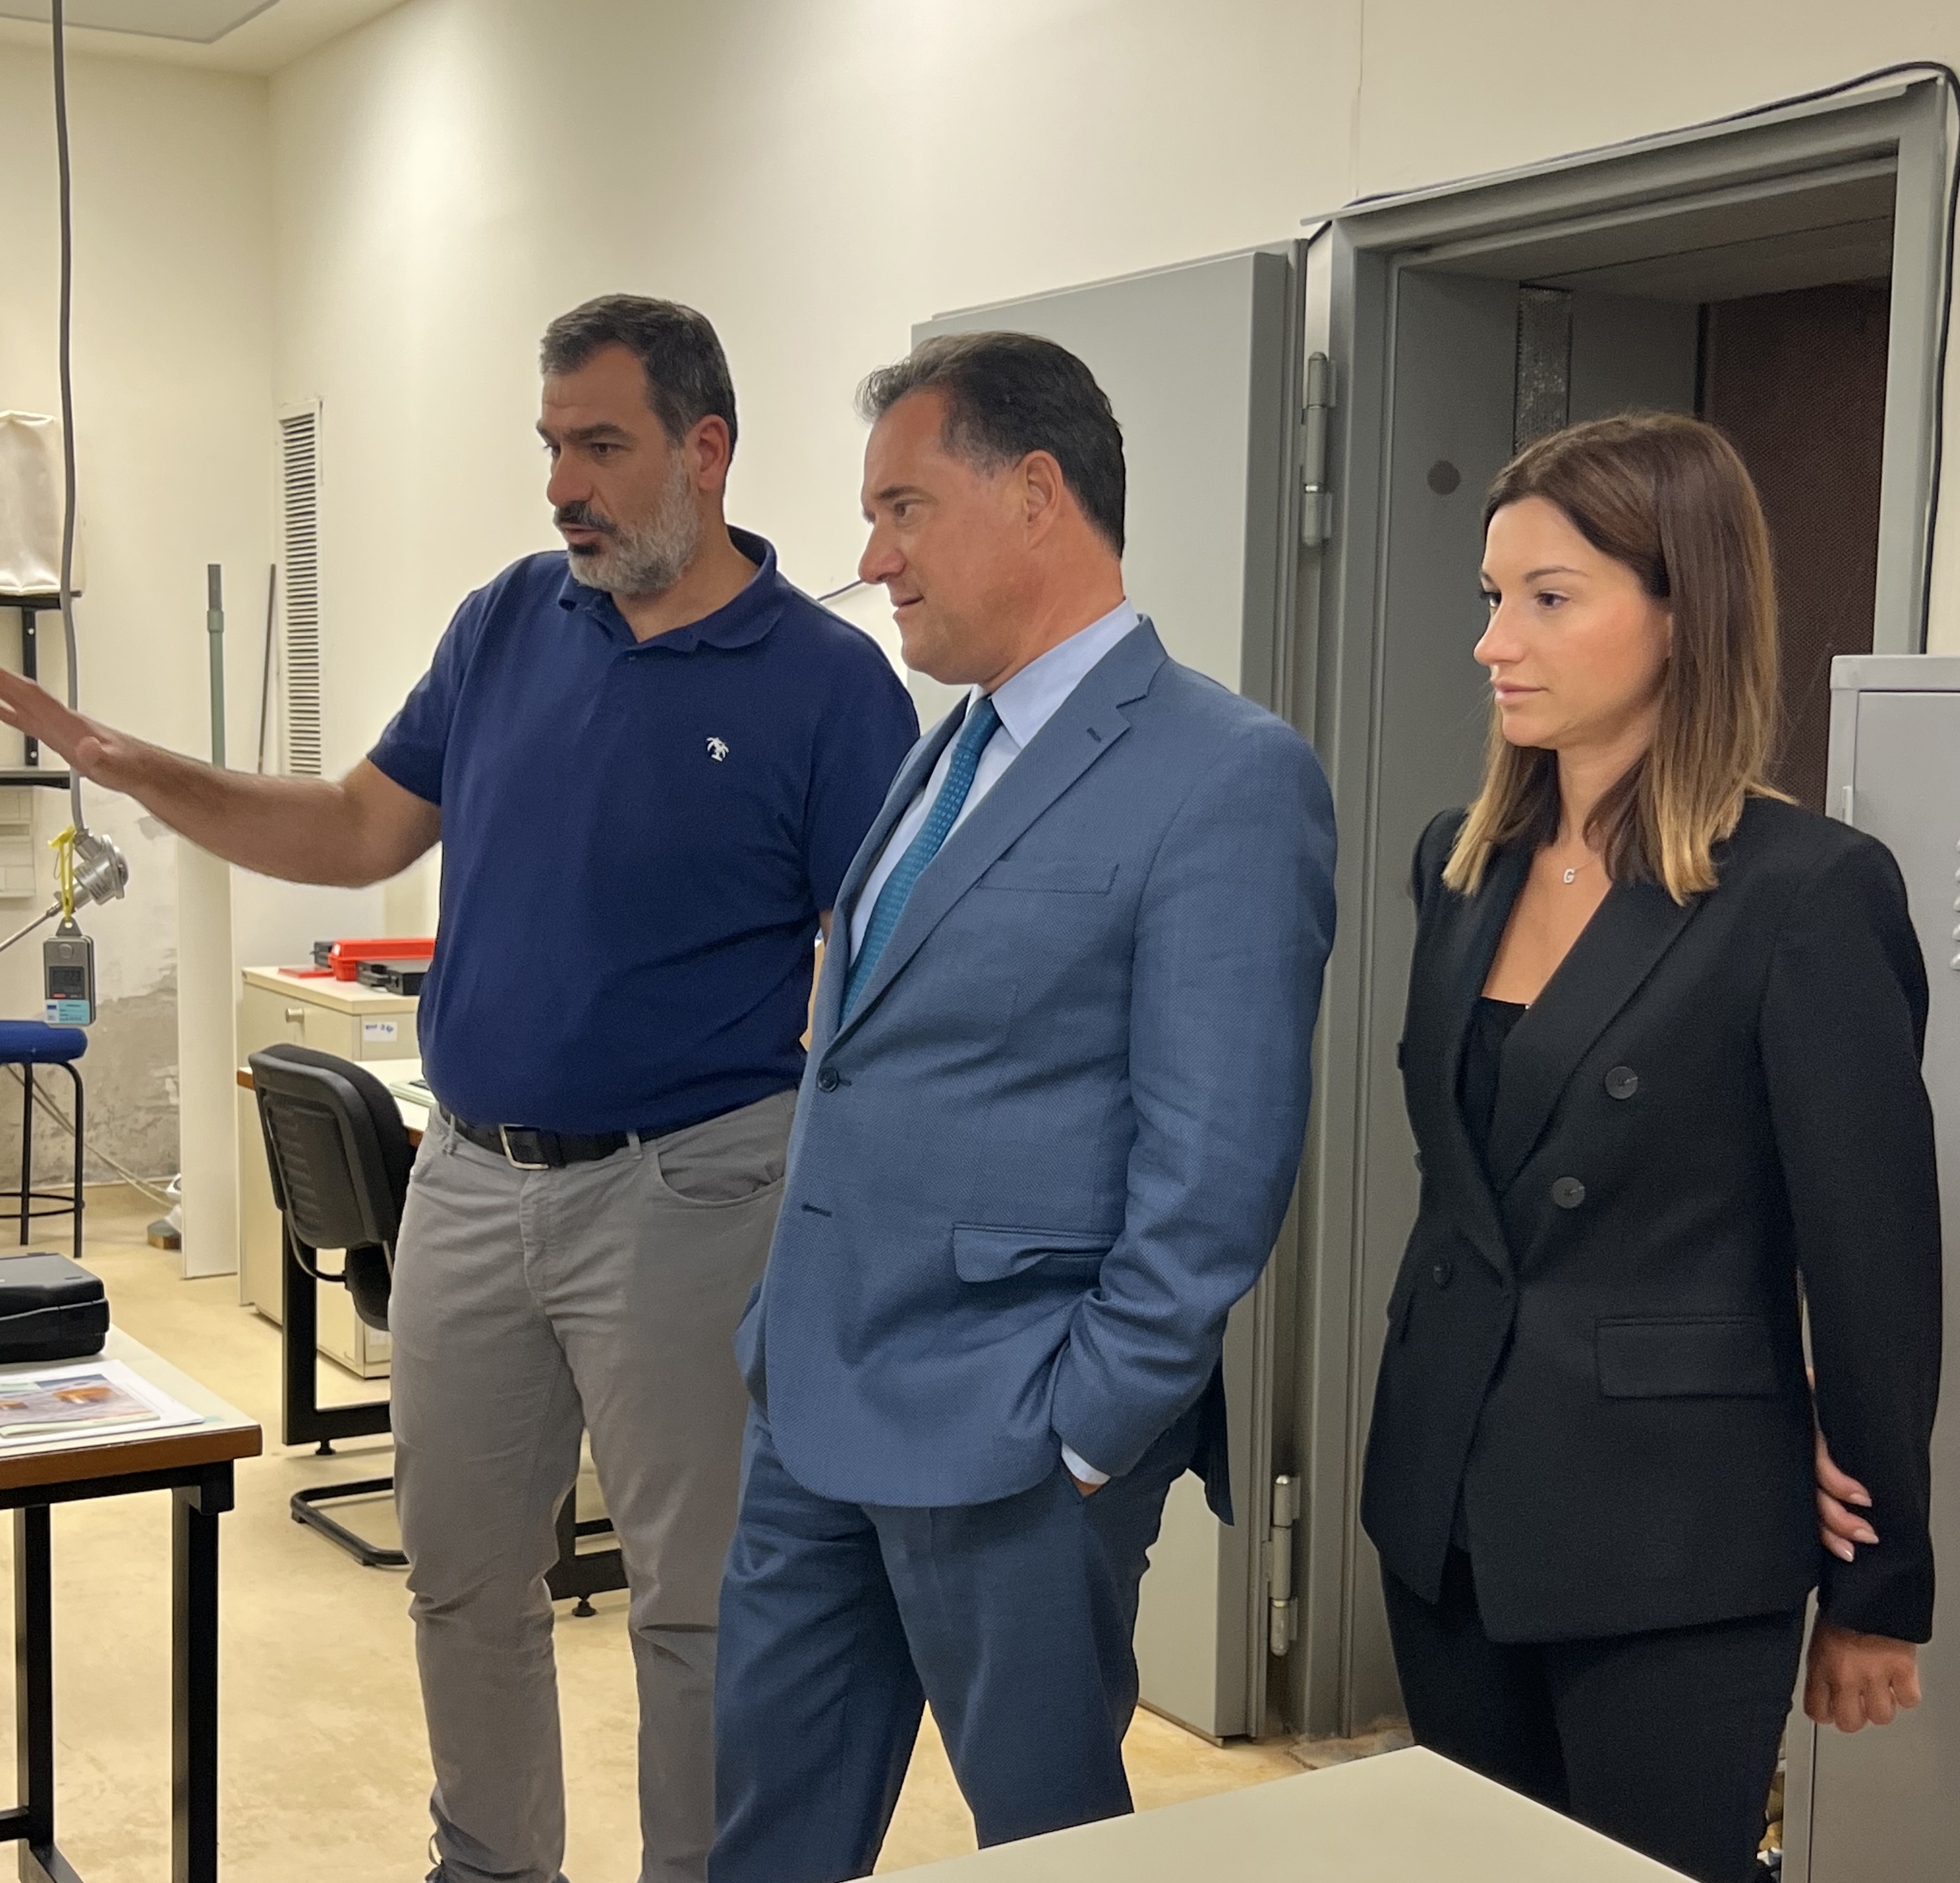 Επίσκεψη του Υπουργού Ανάπτυξης και Επενδύσεων κ. Άδωνι Γεωργιάδη στο Ελληνικό Ινστιτούτο Μετρολογίας στη Σίνδο